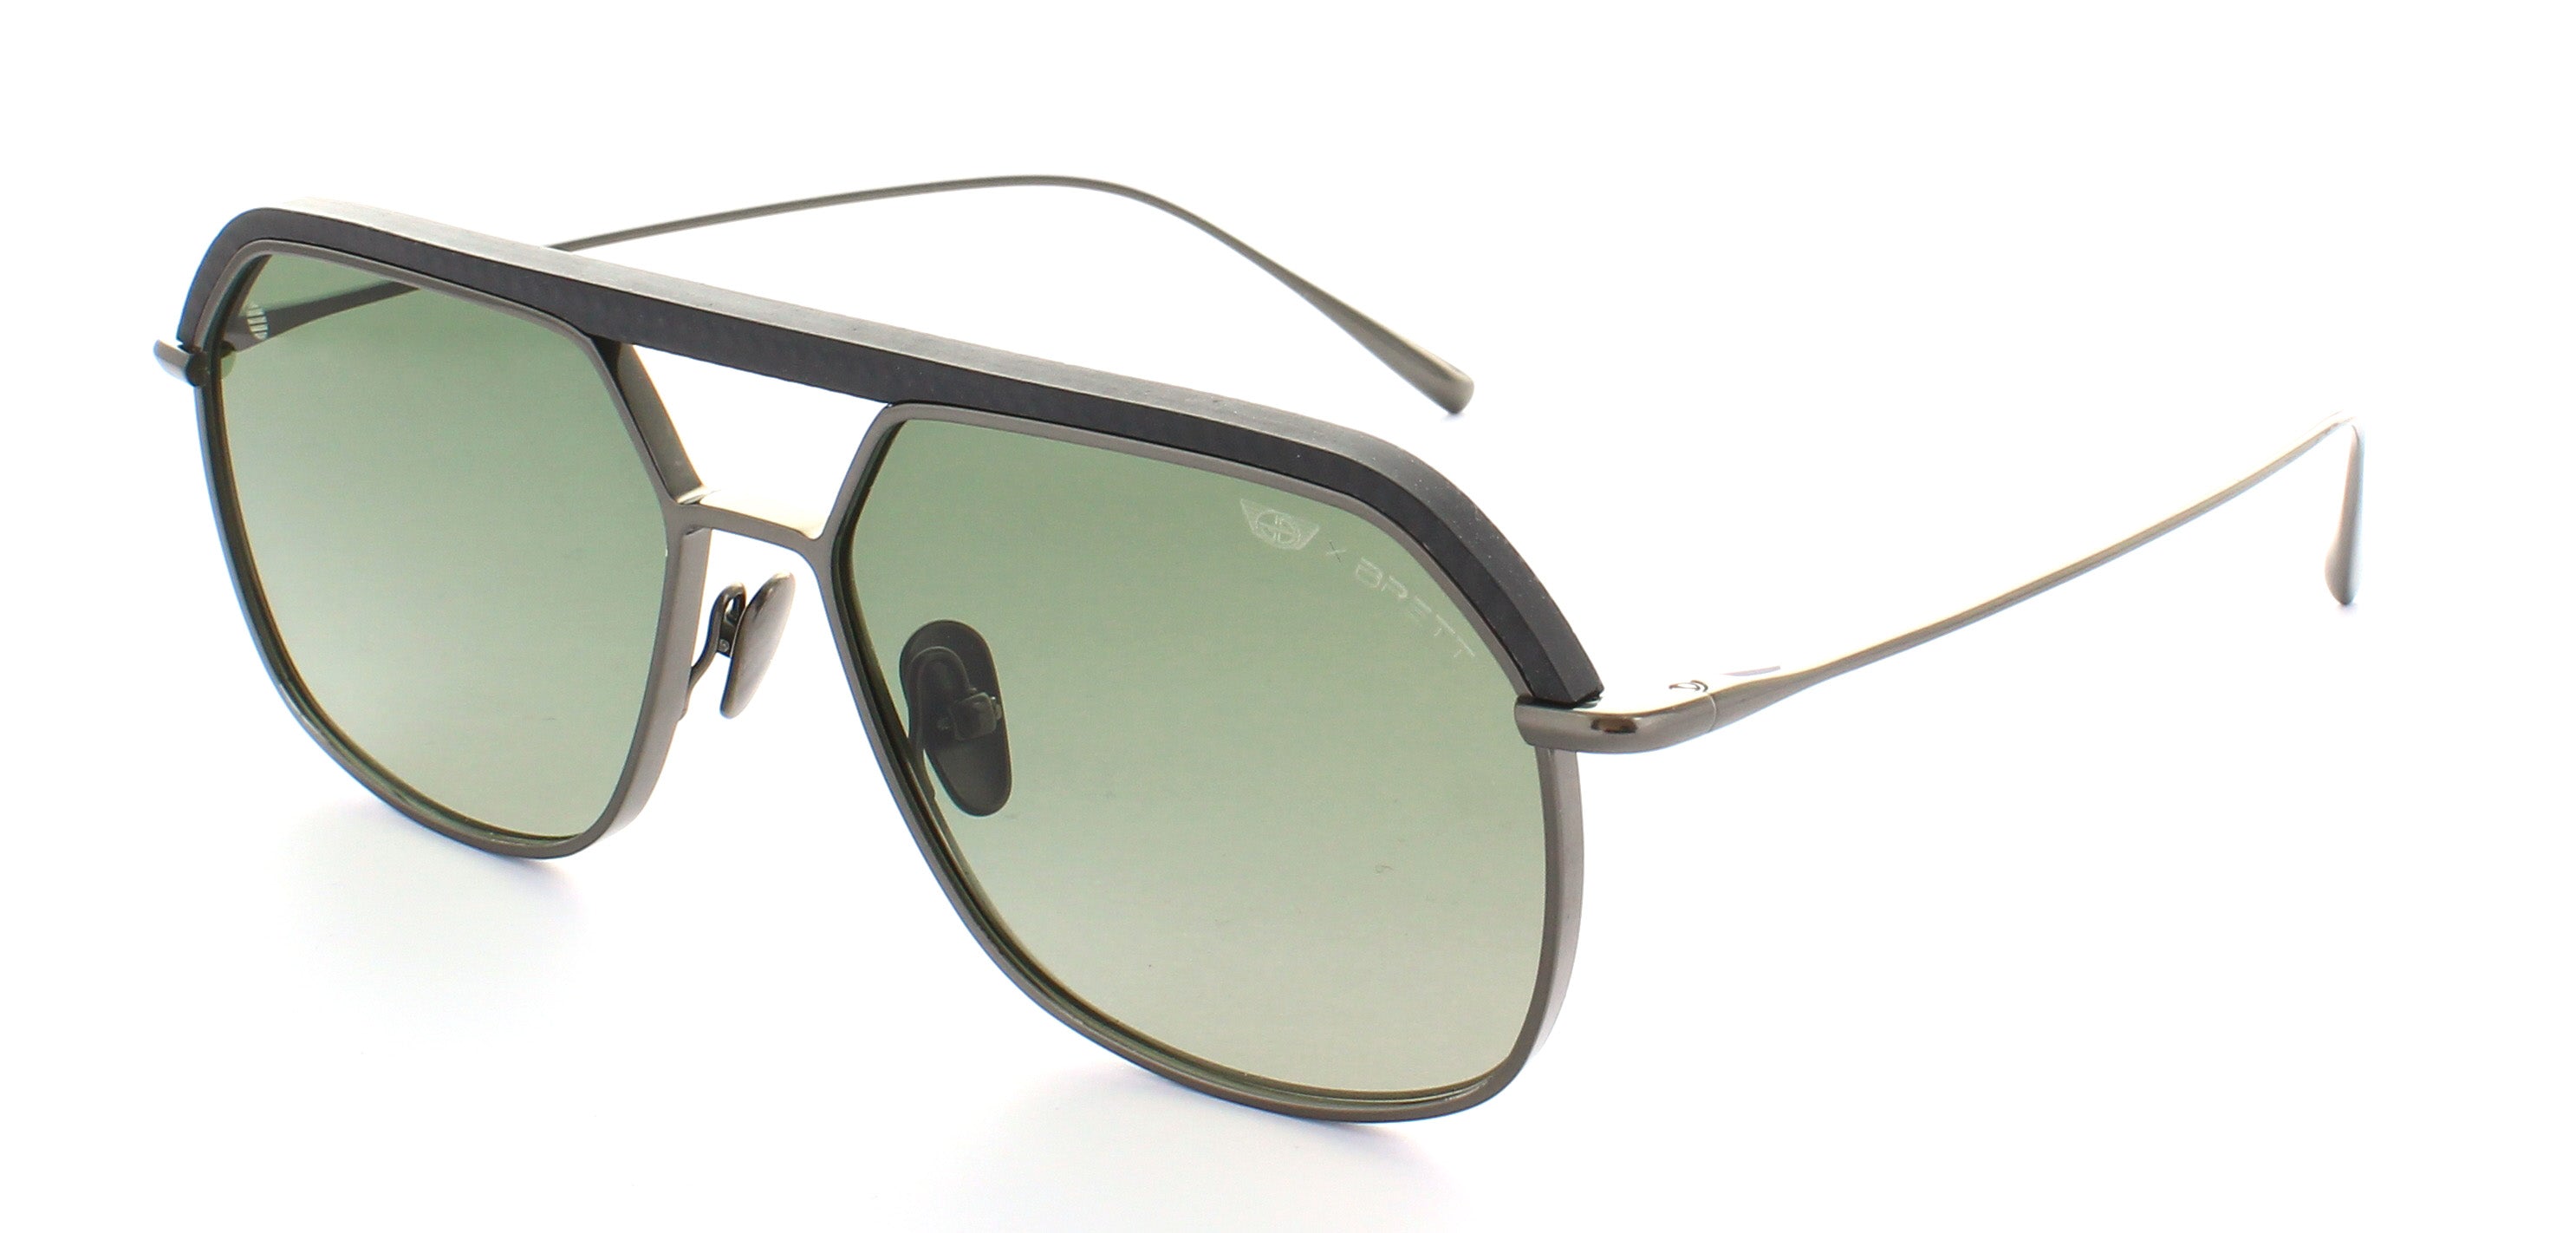 Sunglasses S8 - Shiny Gun / Matt Black